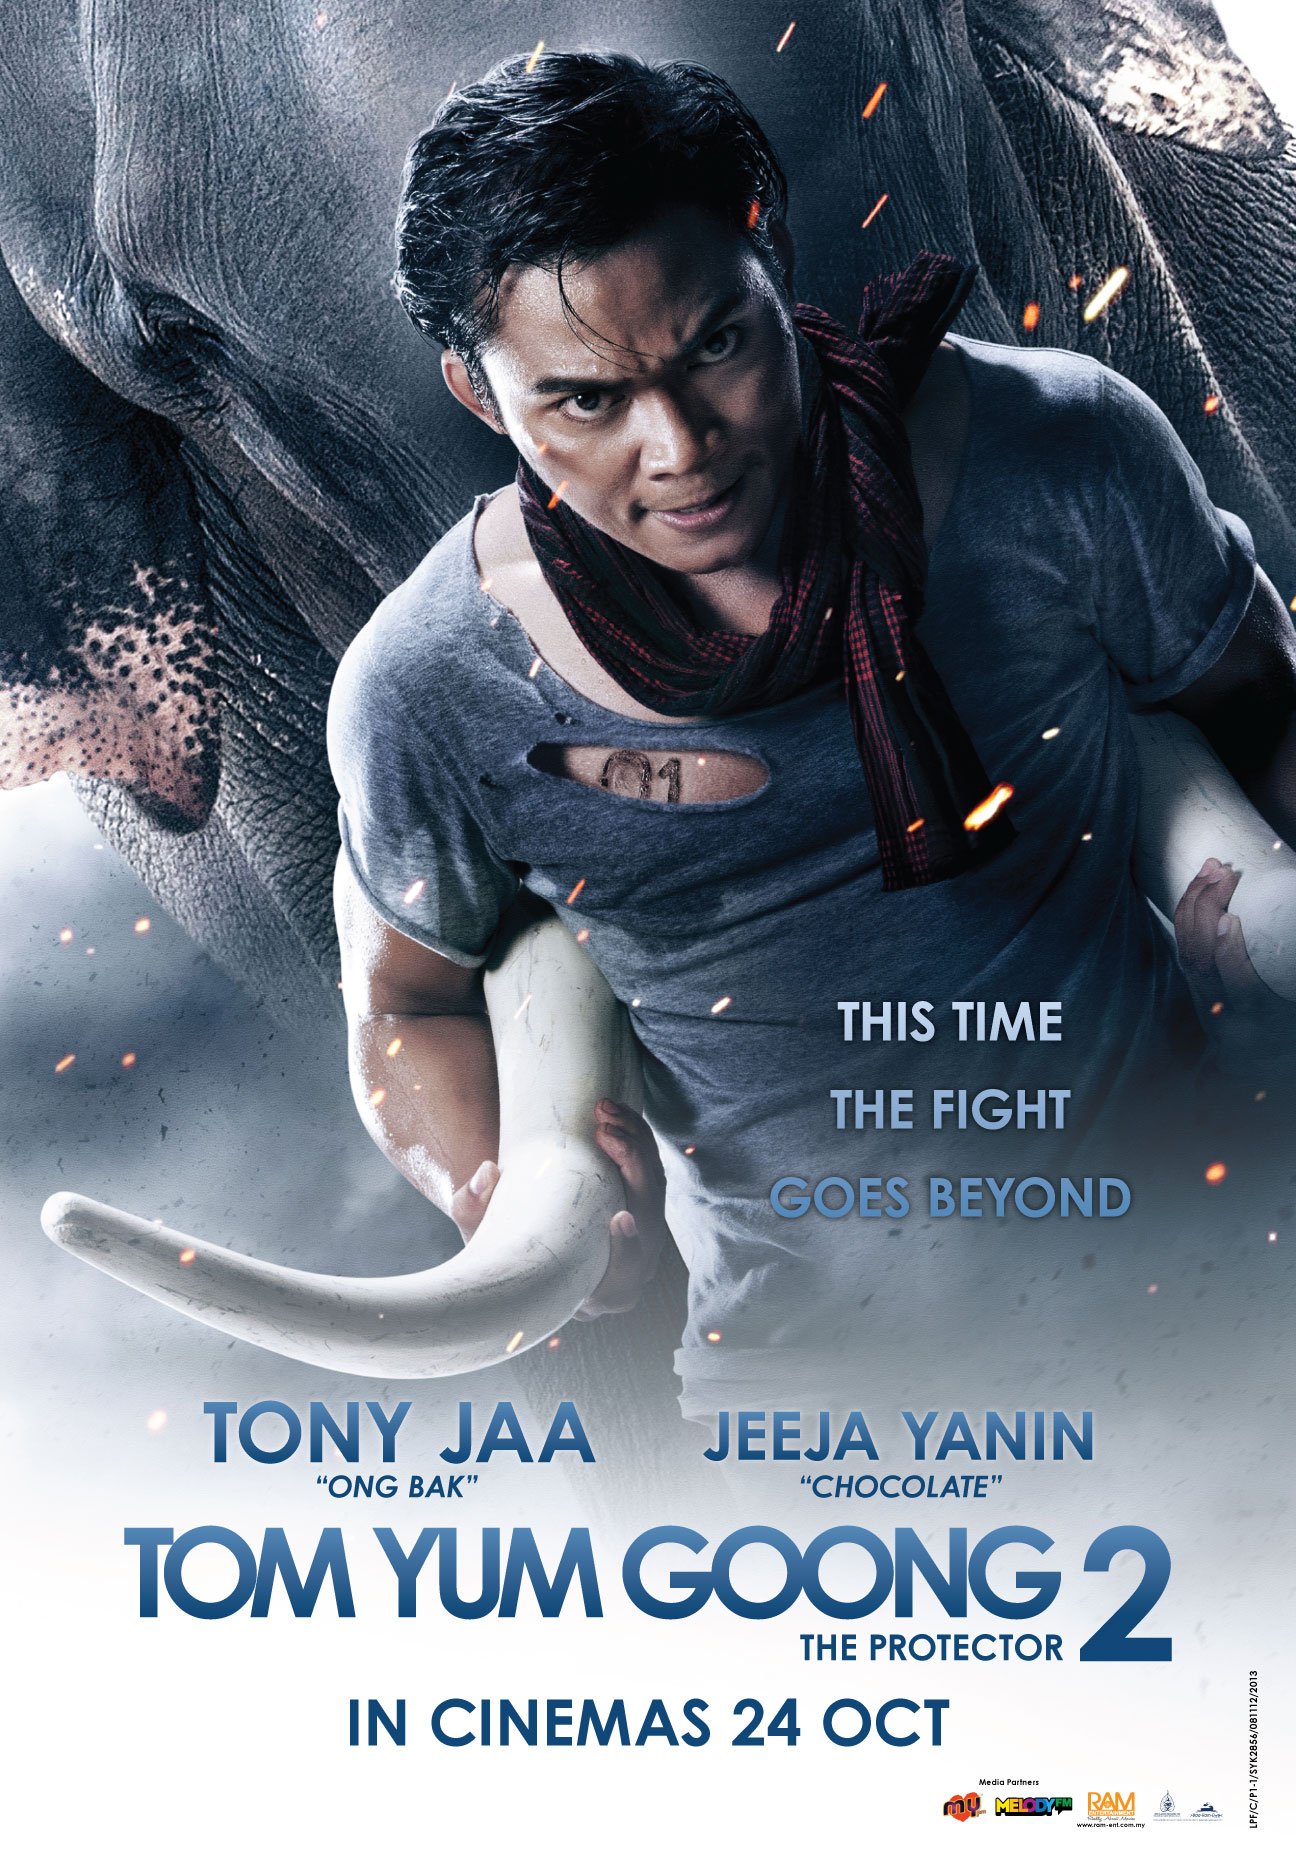 L'affiche originale du film Tom yum goong 2 en Thaïlandais